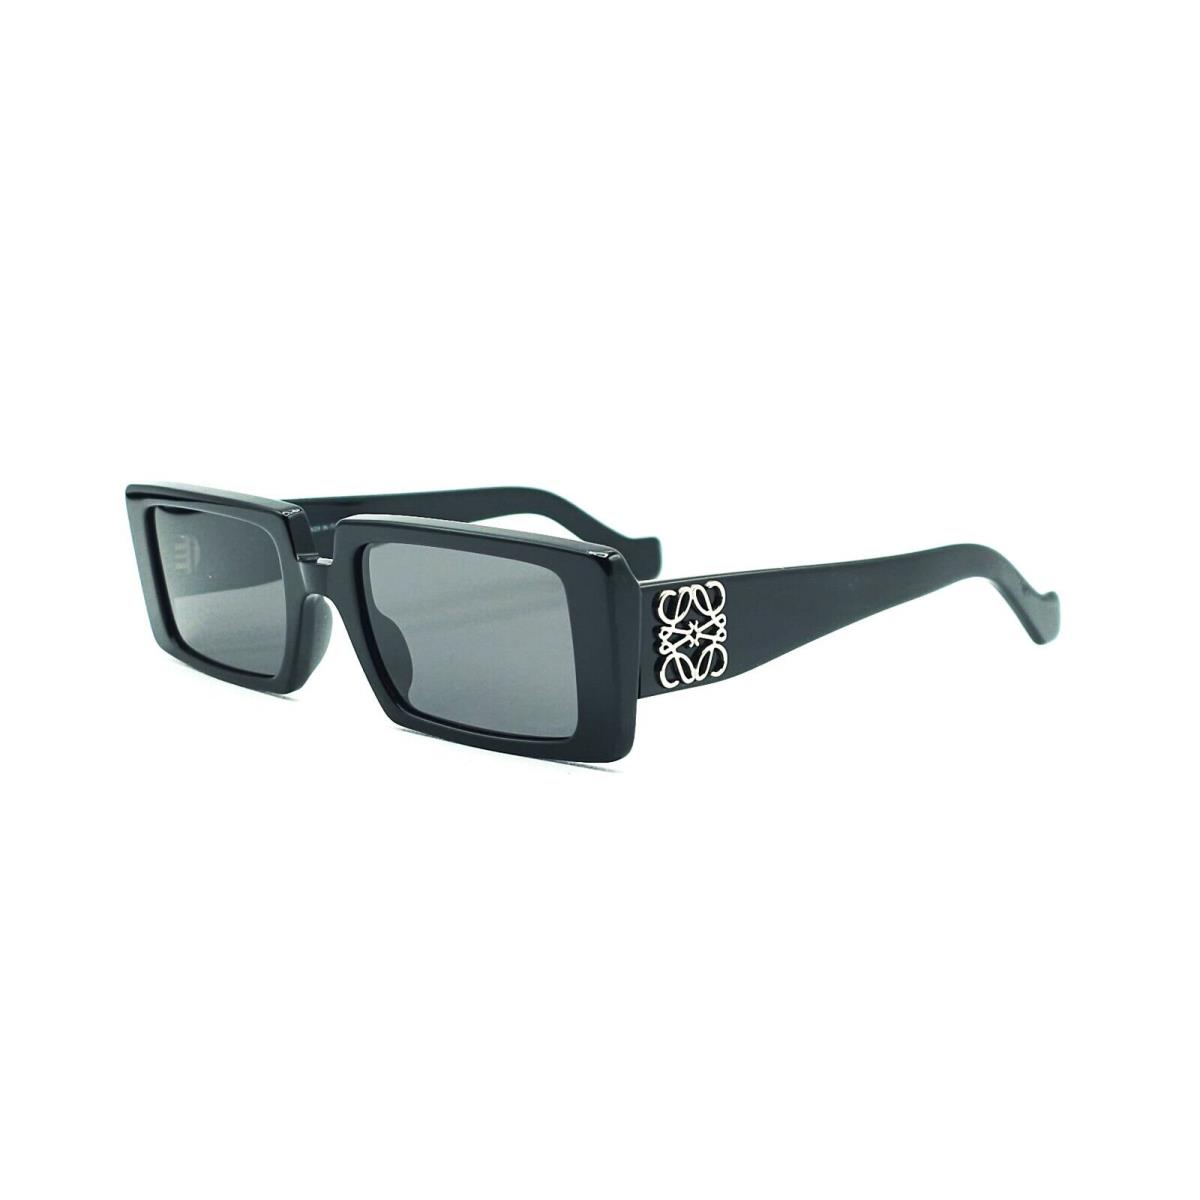 Loewe LW40028I Sunglasses 01A Black/gray Lenses Size 54